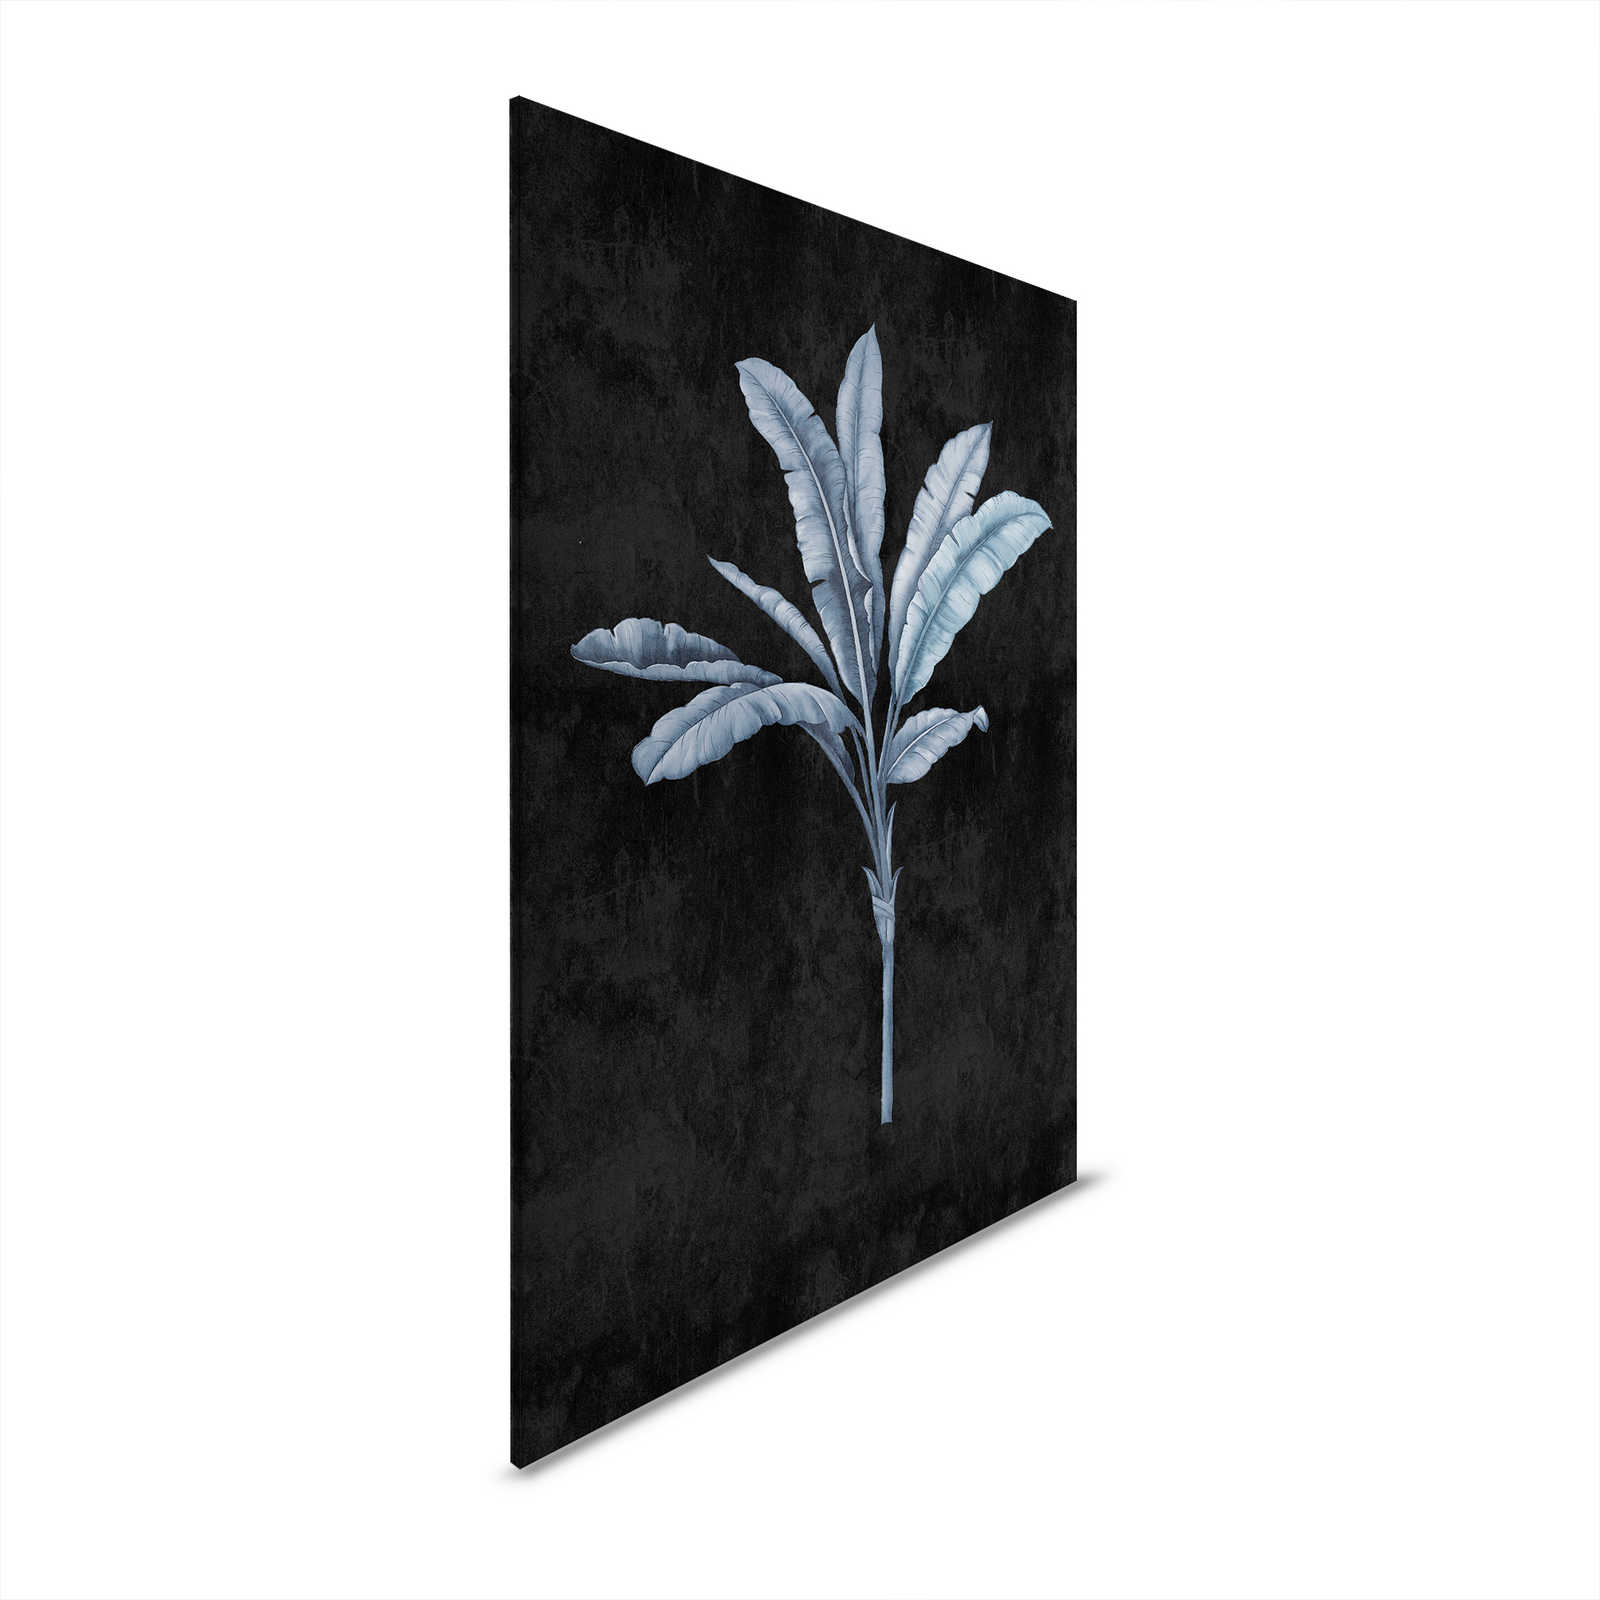 Fiji 2 - Toile noire avec motif de palmiers bleu-gris - 0,80 m x 1,20 m
